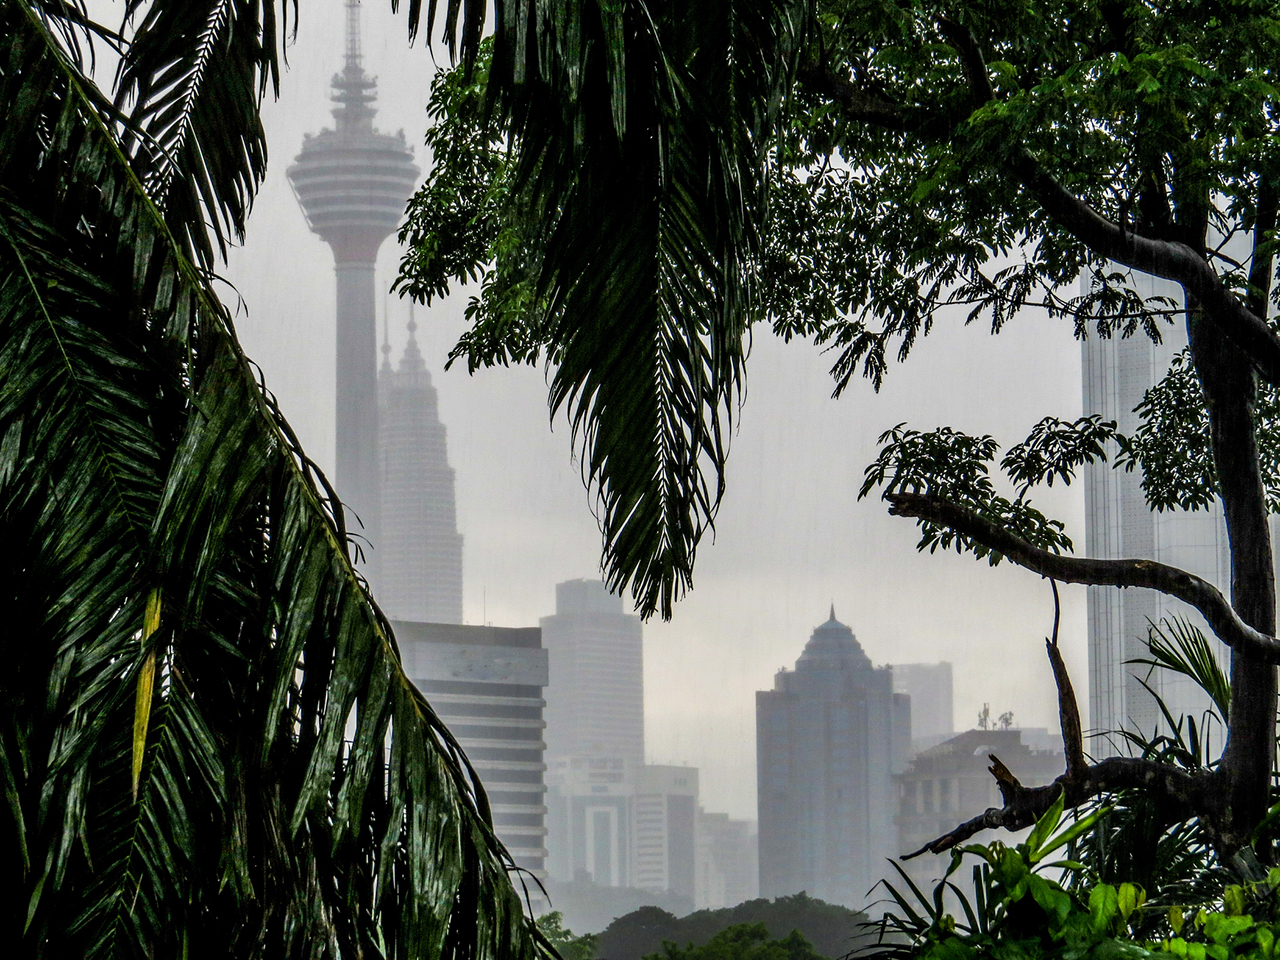 Rainy day in Kuala Lumpur, Malaysia